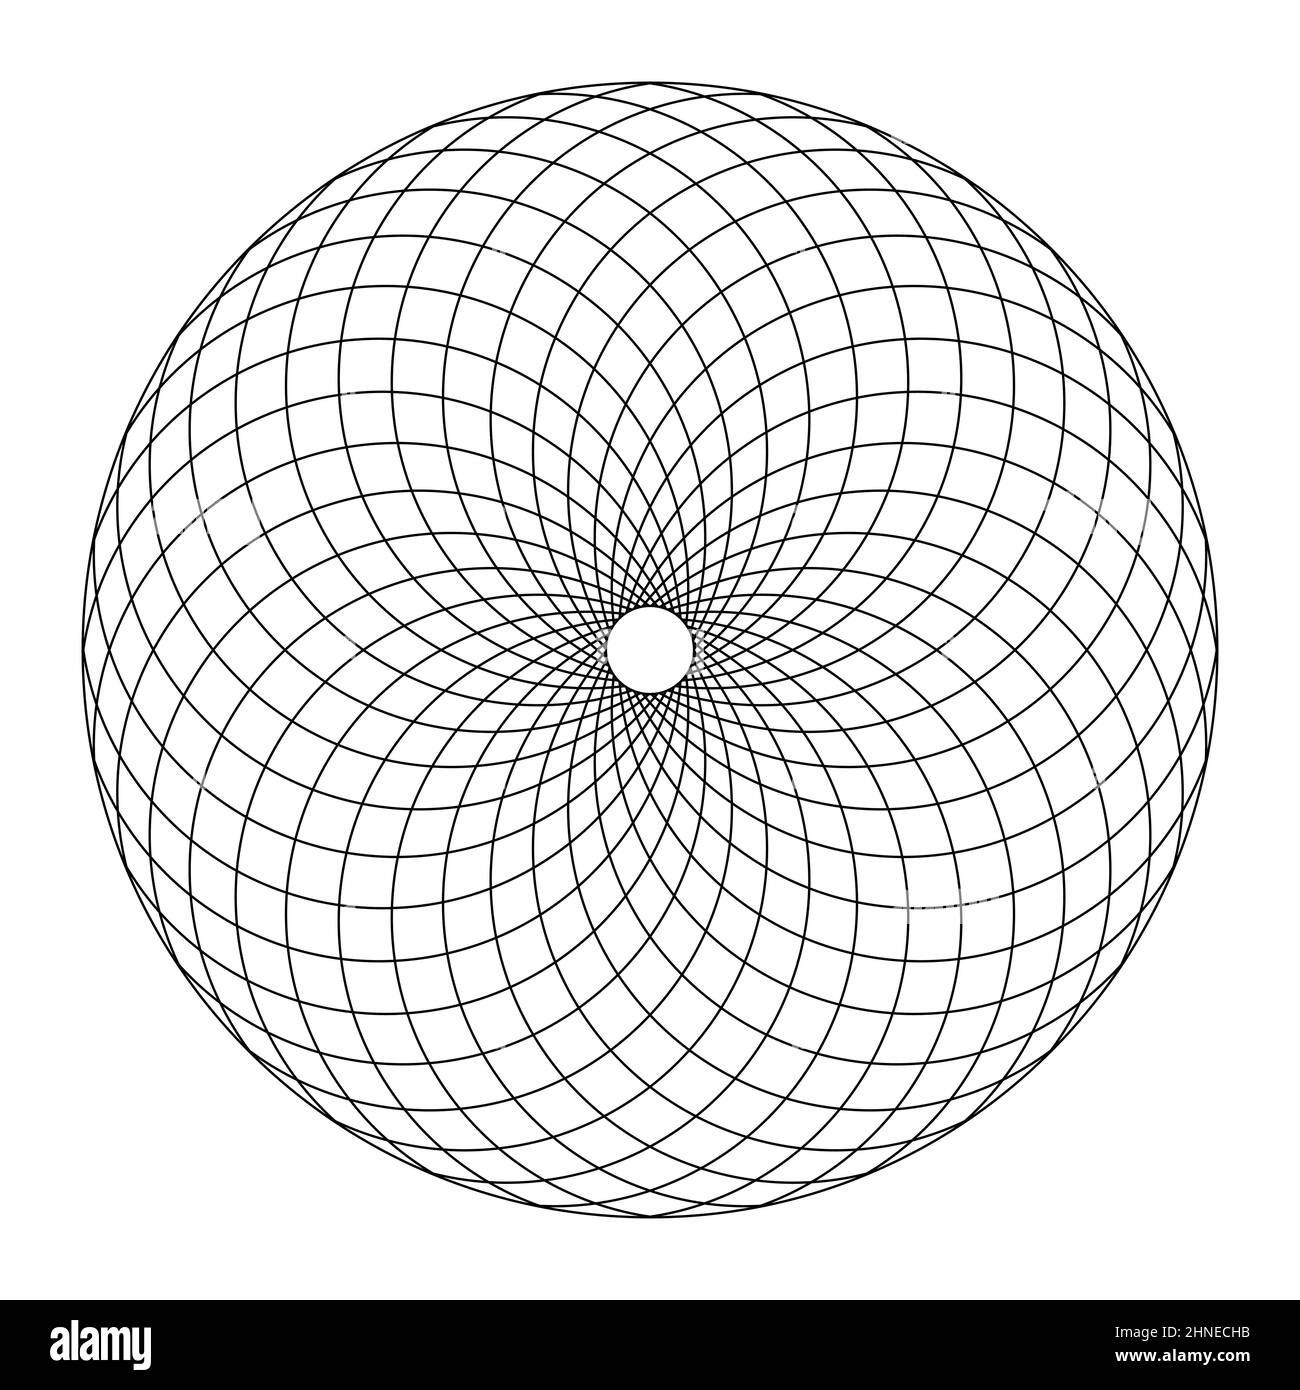 Modello Fibonacci circolare, secondo la struttura di un cono di pino. Area circolare formata da linee disposte a spirale, creando pattern trapezi. Foto Stock